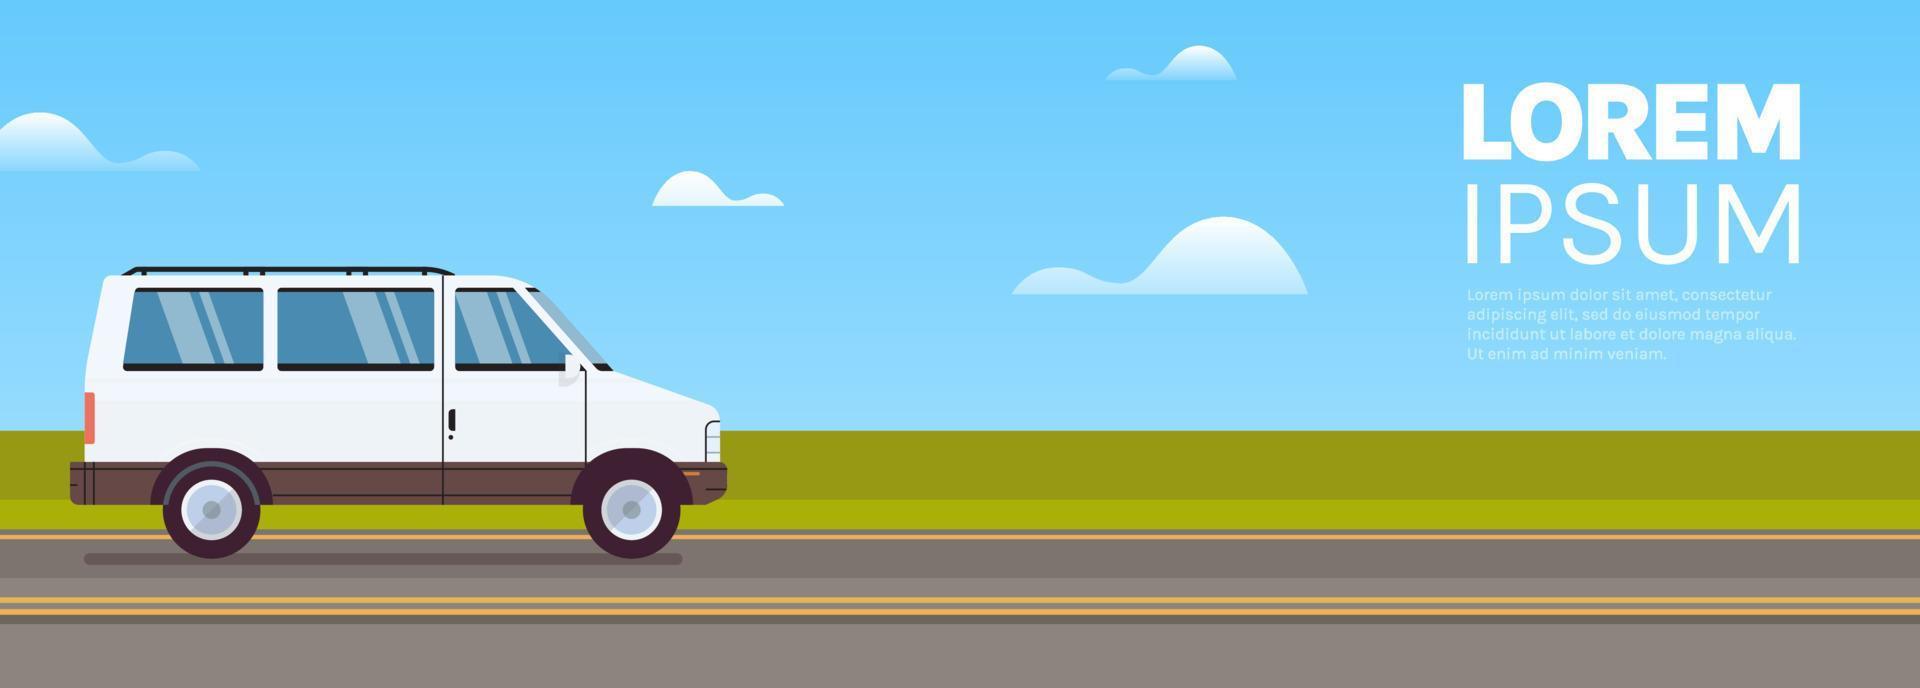 entrega de van de transporte de carga e van comercial na ilustração vetorial plana horizontal do conceito de bandeira de estrada. vetor